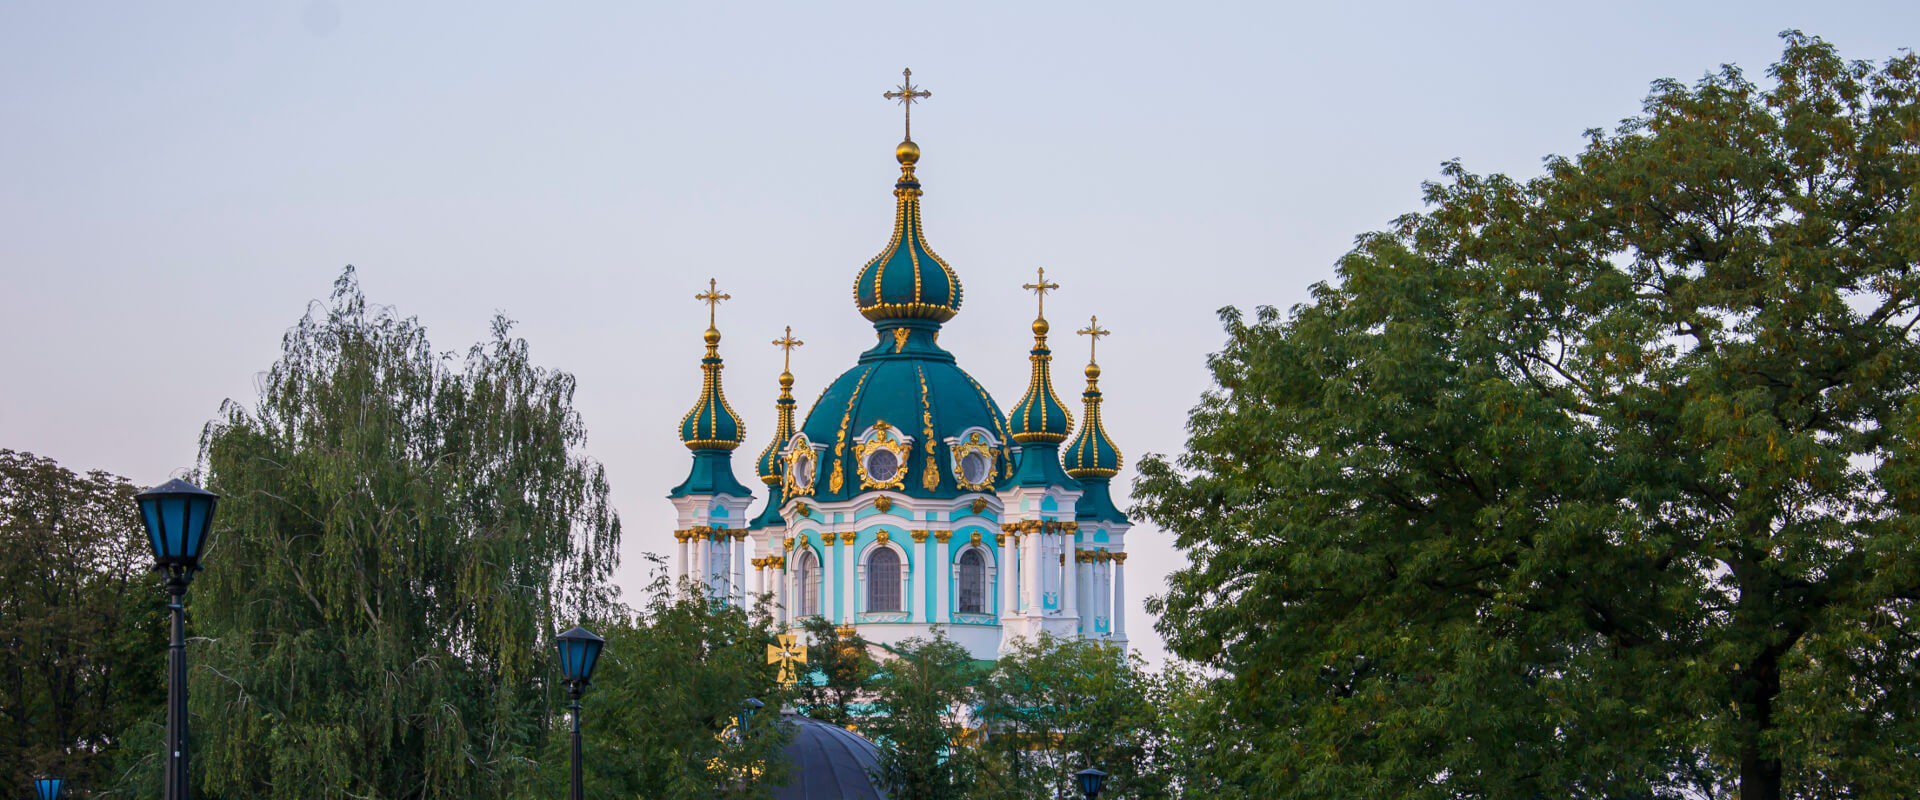 Kijów - co WARTO zobaczyć? 17 najciekawszych atrakcji Kijowa